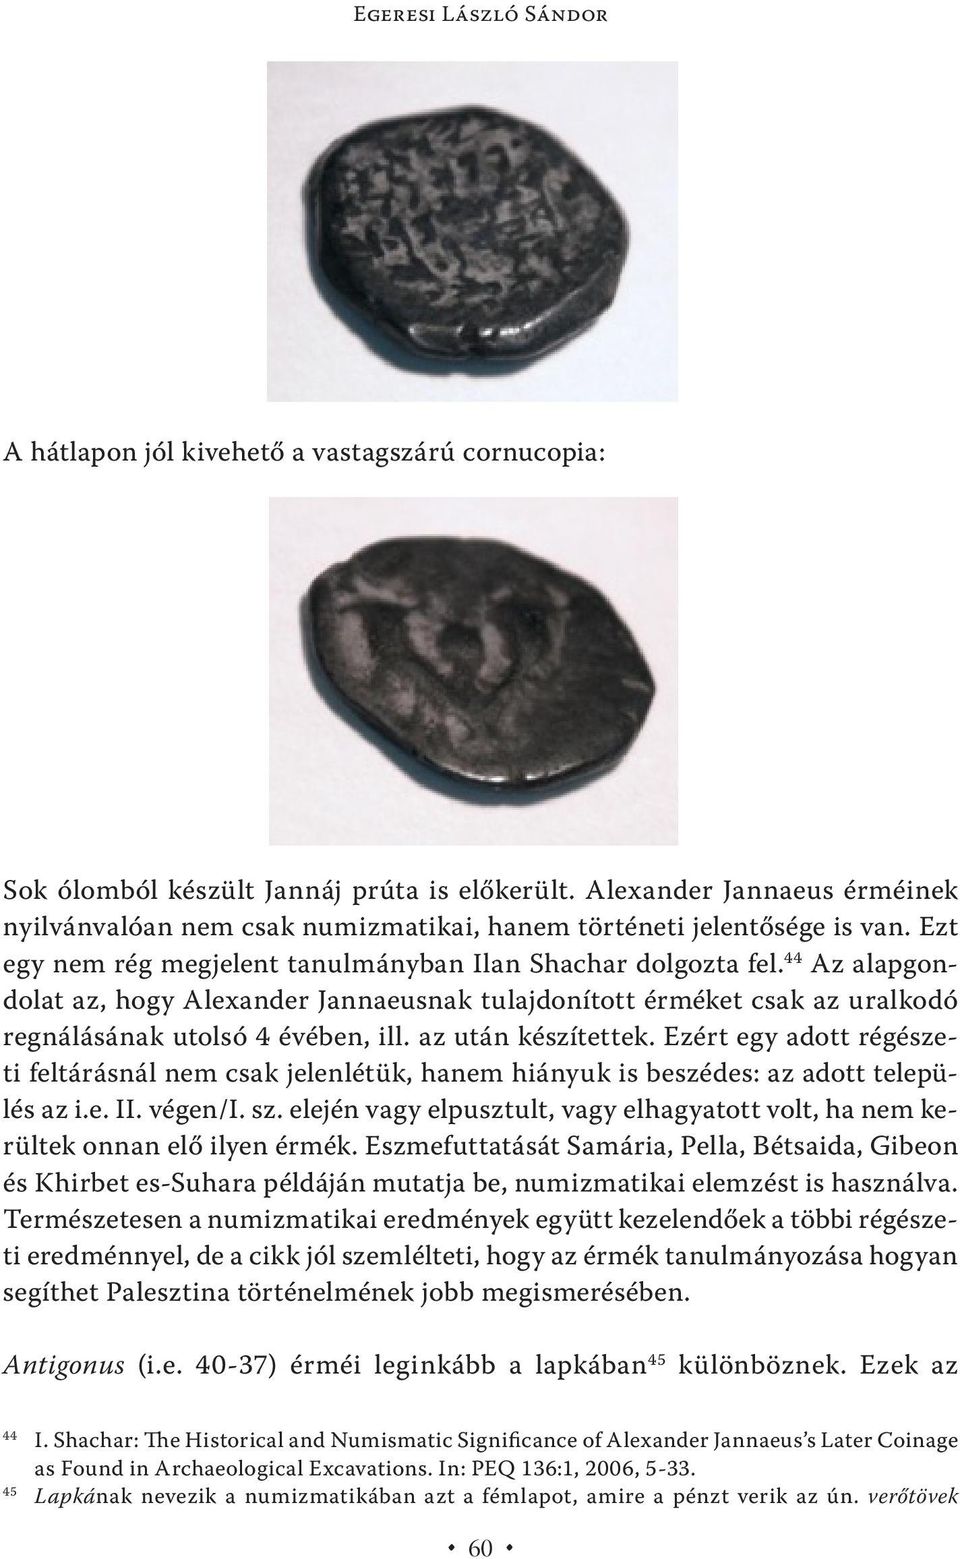 44 Az alapgondolat az, hogy Alexander Jannaeusnak tulajdonított érméket csak az uralkodó regnálásának utolsó 4 évében, ill. az után készítettek.